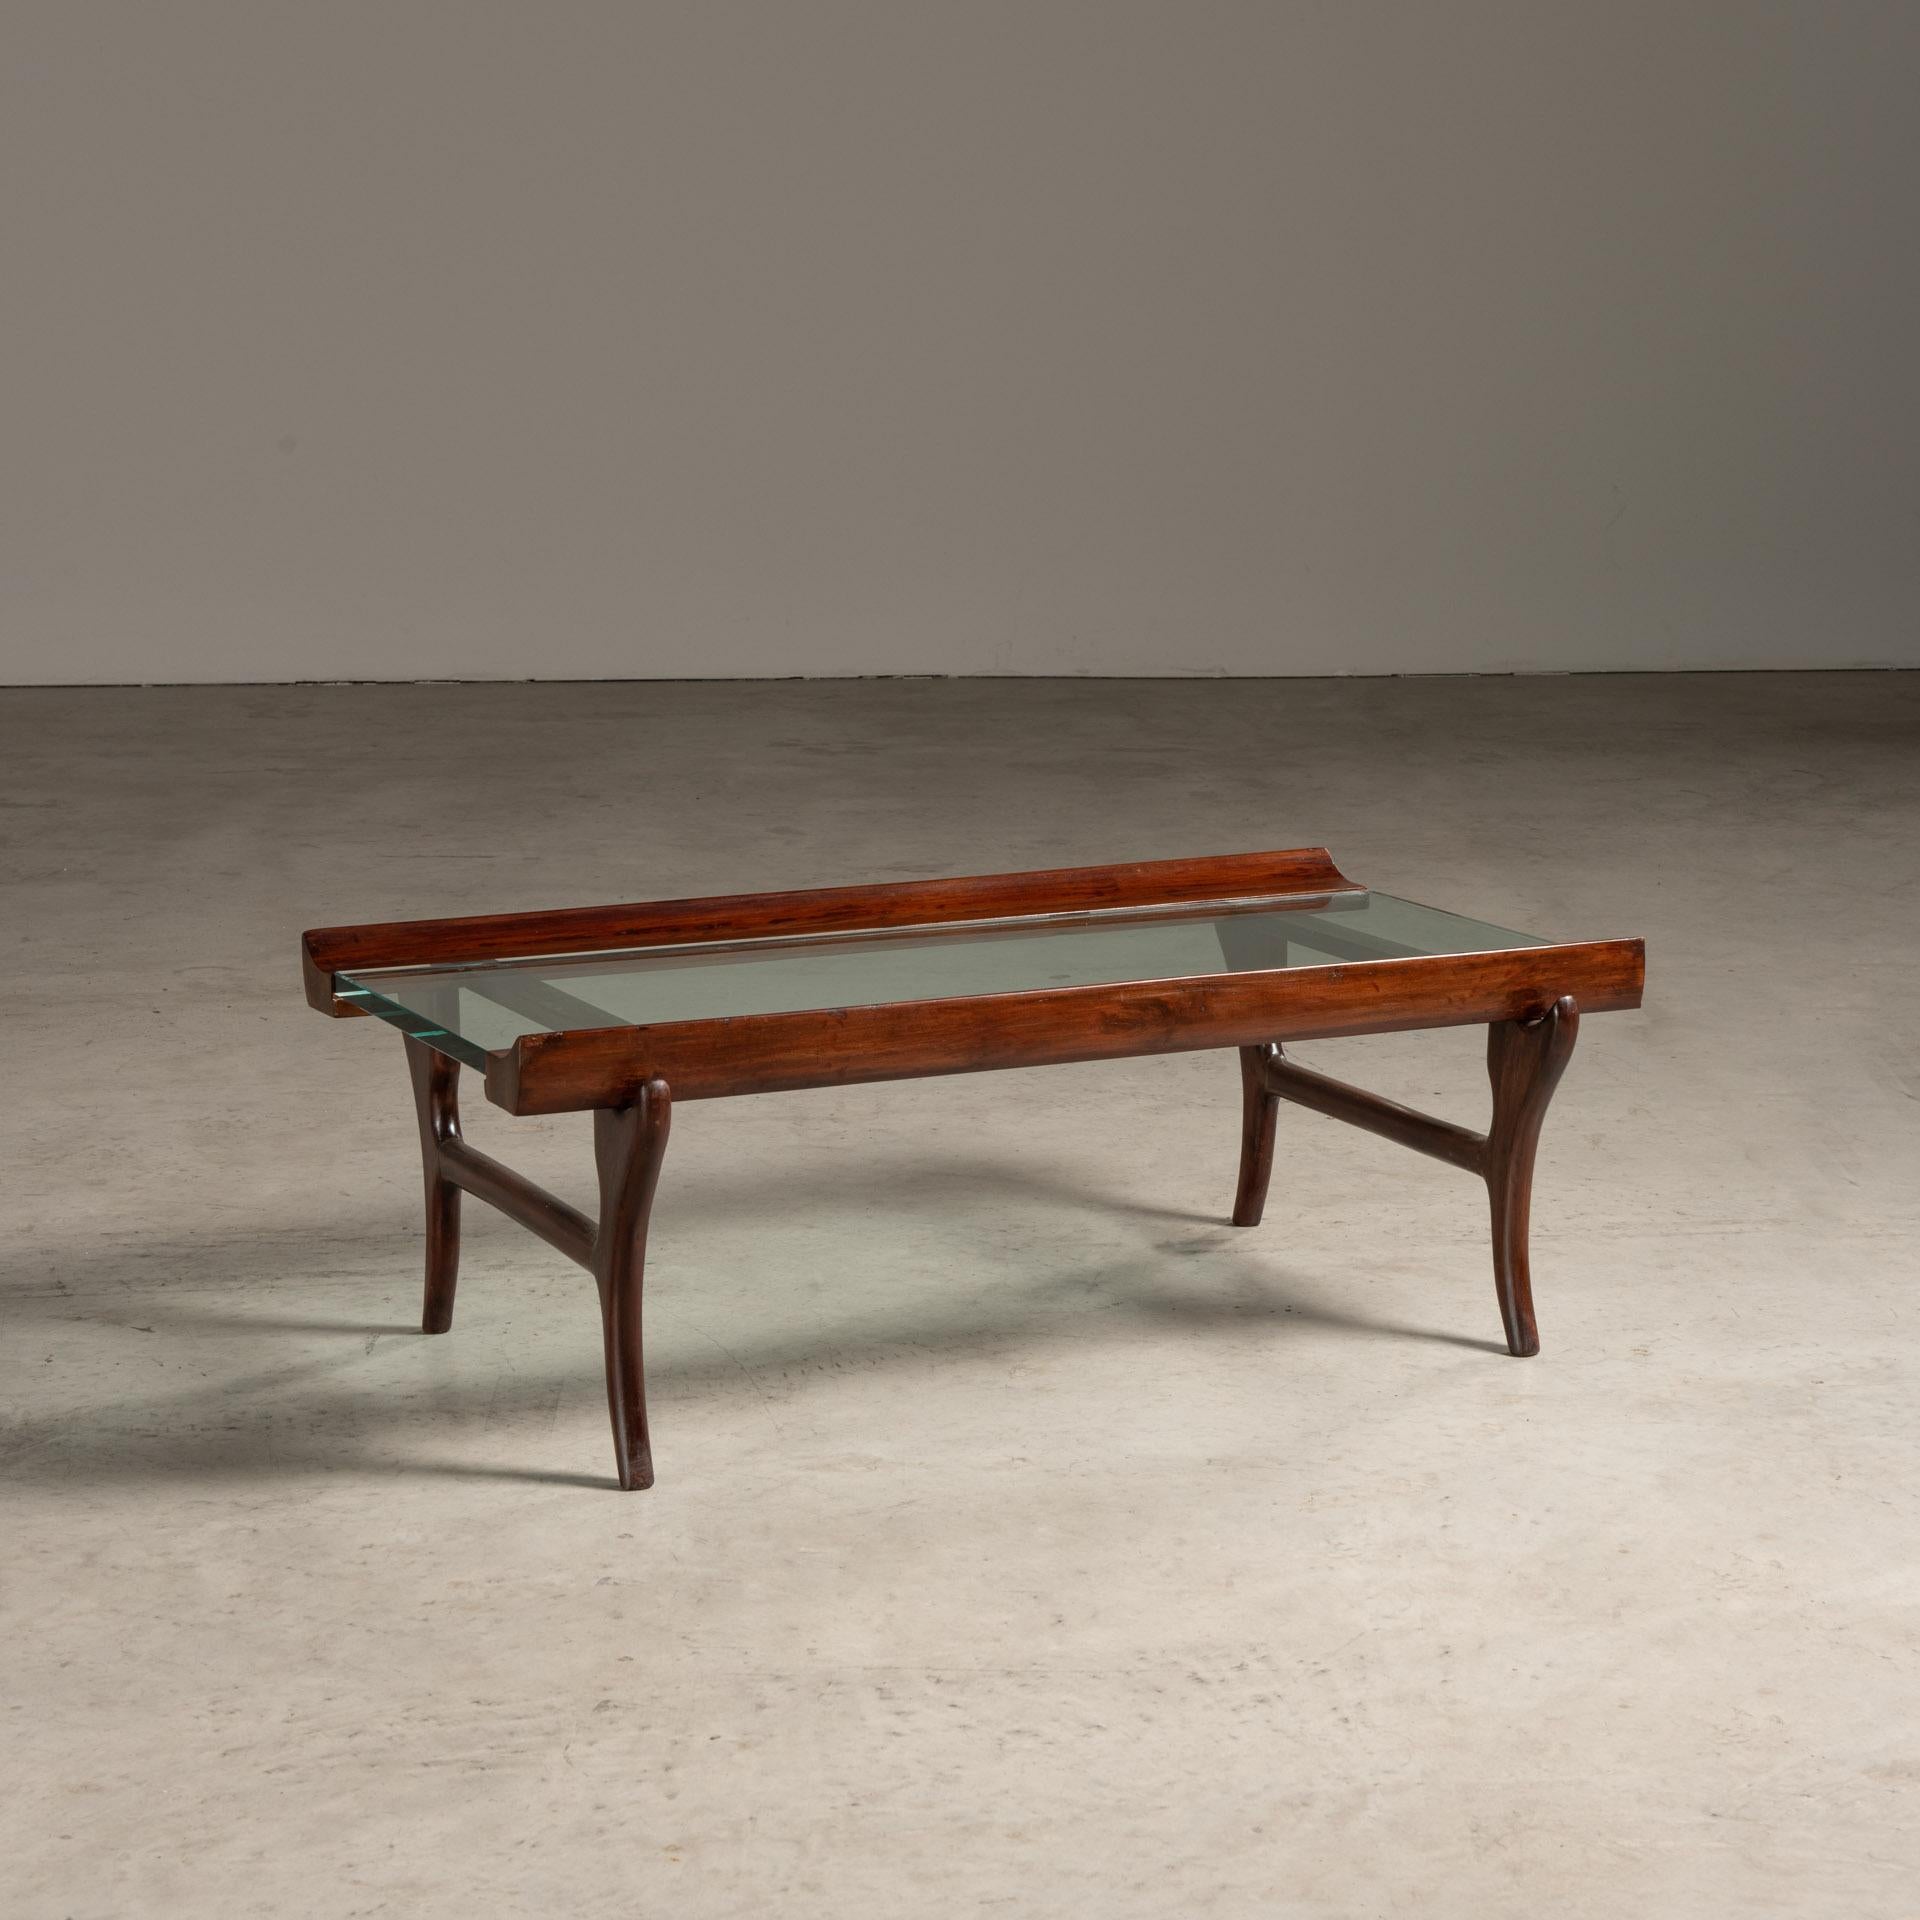 La table centrale conçue par Giuseppe Scapinelli est un bel exemple de mobilier brésilien du milieu du siècle qui reflète à la fois l'élégance et un grand sens de l'artisanat. La table se caractérise par ses lignes pures et lisses et l'intégration